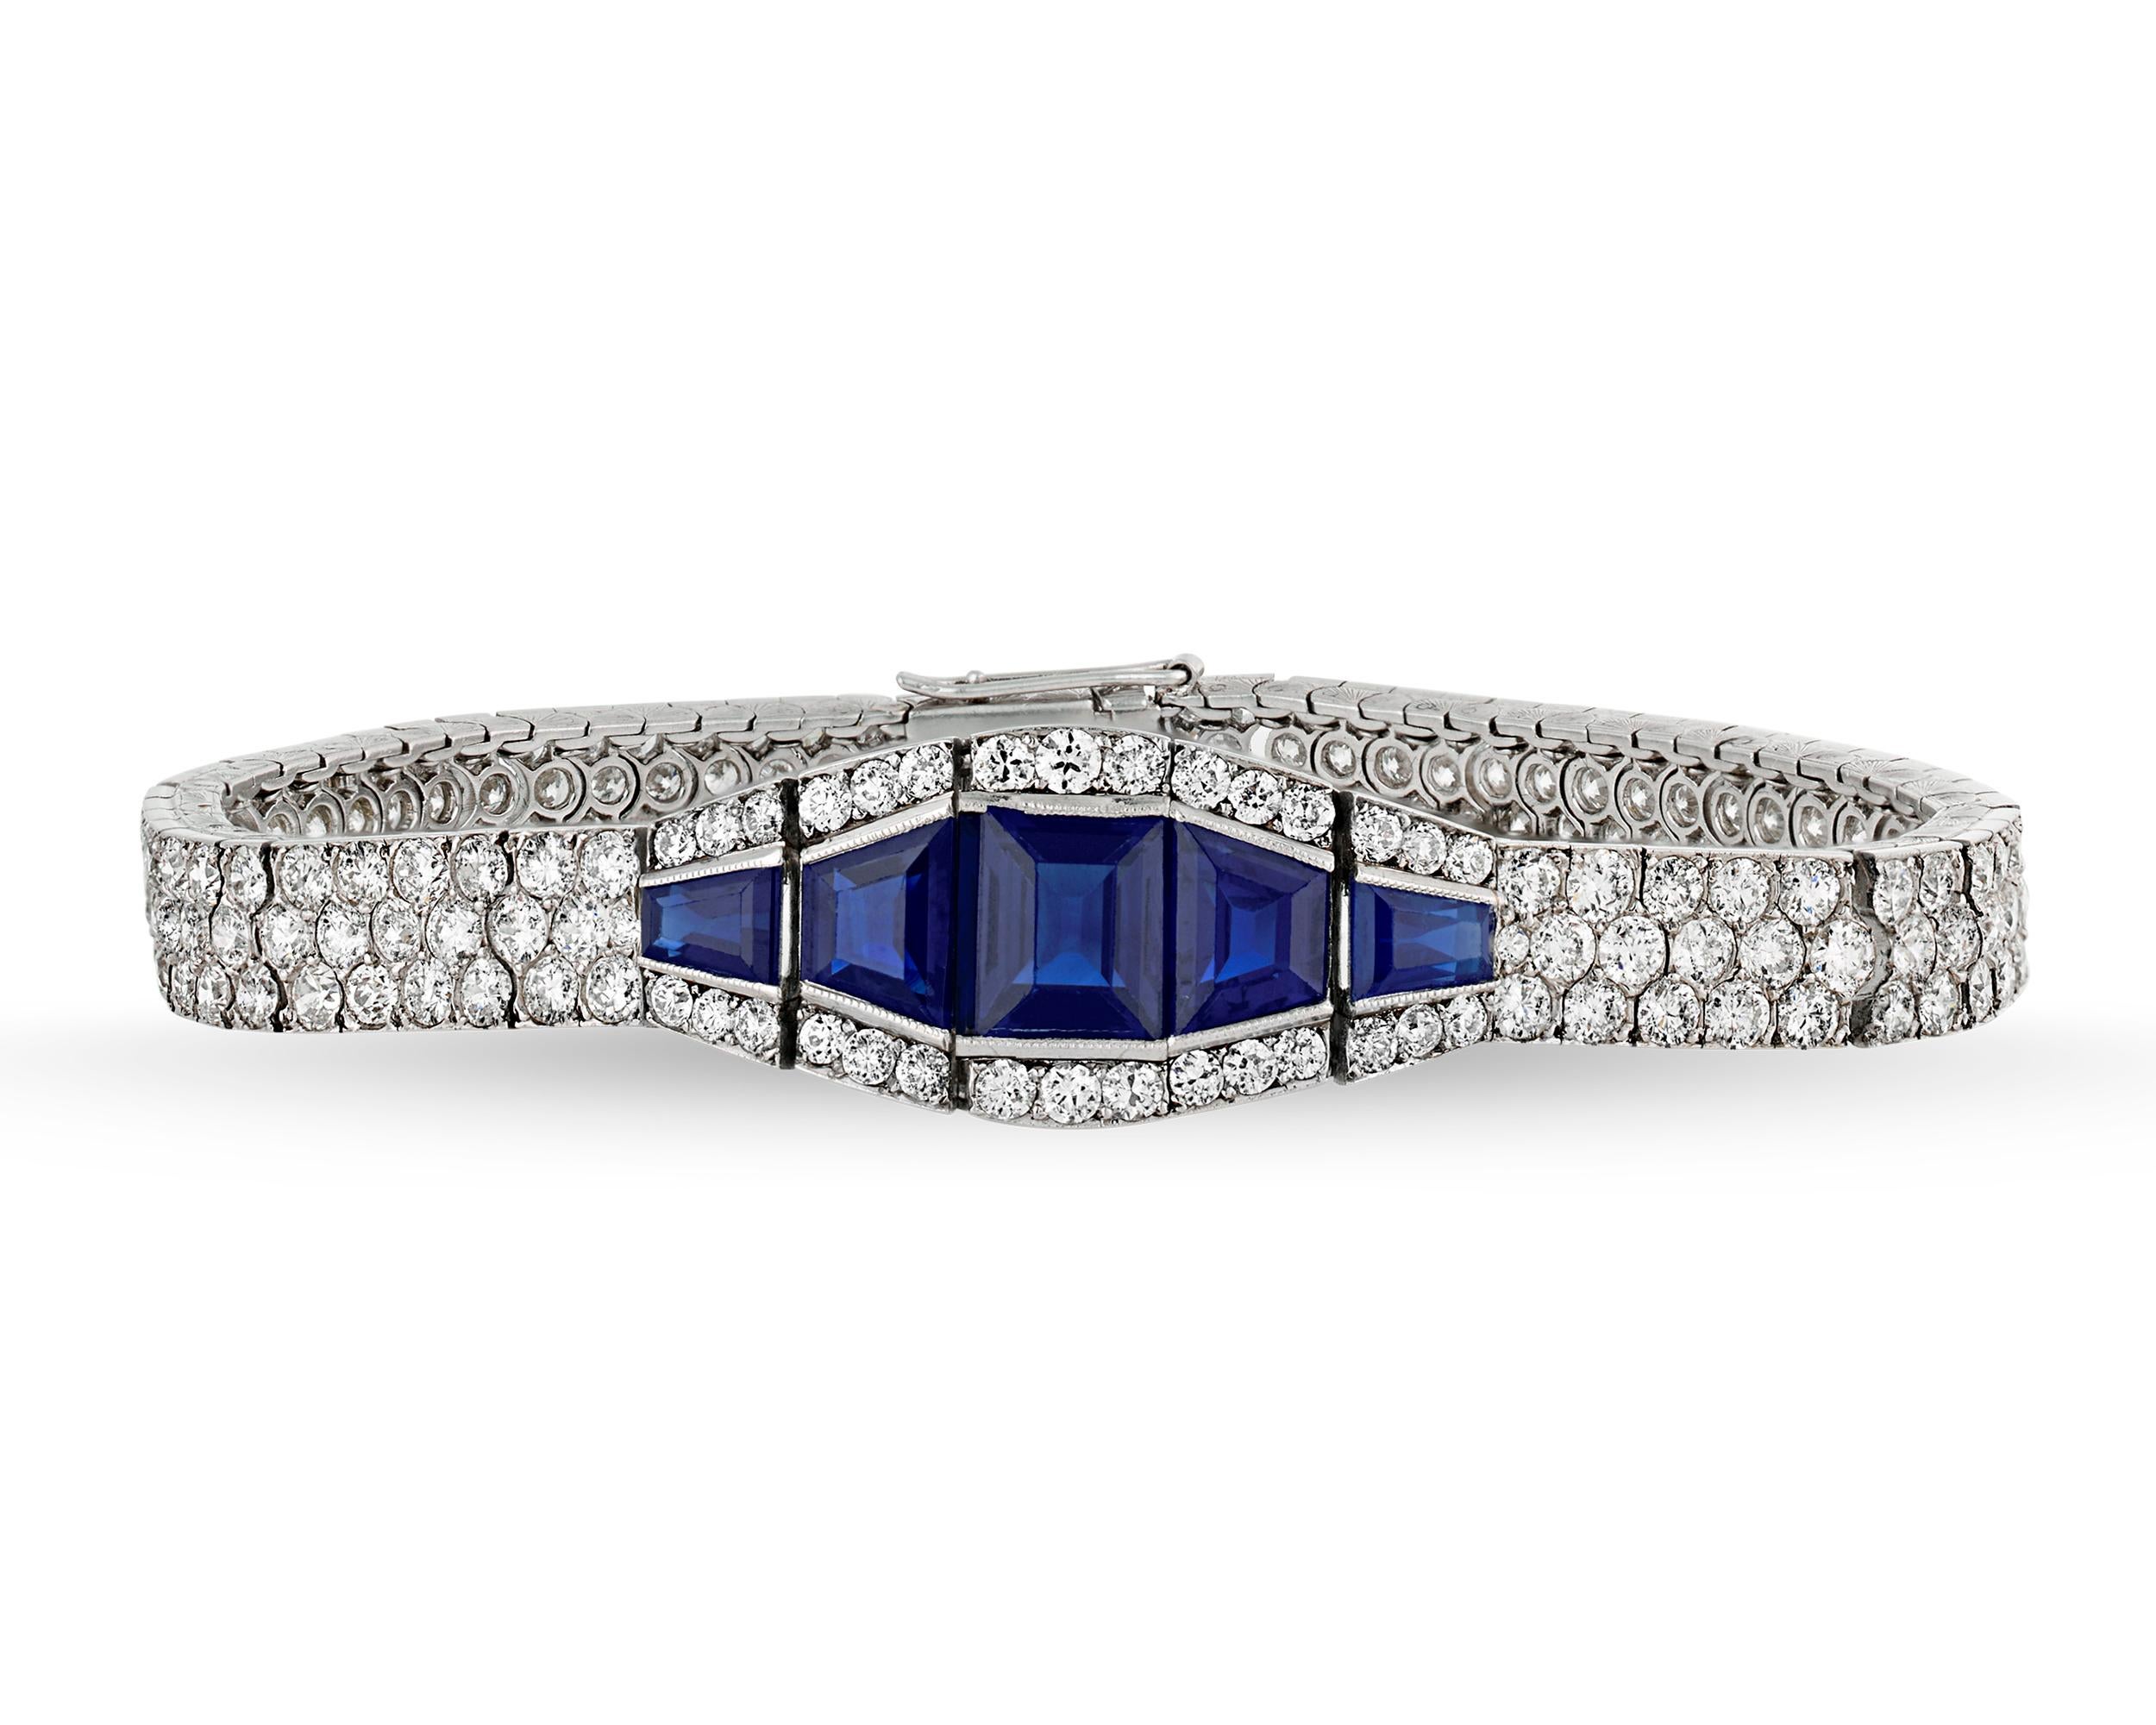 Dieses spektakuläre Saphirarmband verkörpert den eleganten und stilvollen Geist des Art-déco-Designs. Das Armband ist mit einem kühnen geometrischen Muster aus weißen Diamanten von insgesamt ca. 16,00 Karat eingebettet, während reiche, königsblaue